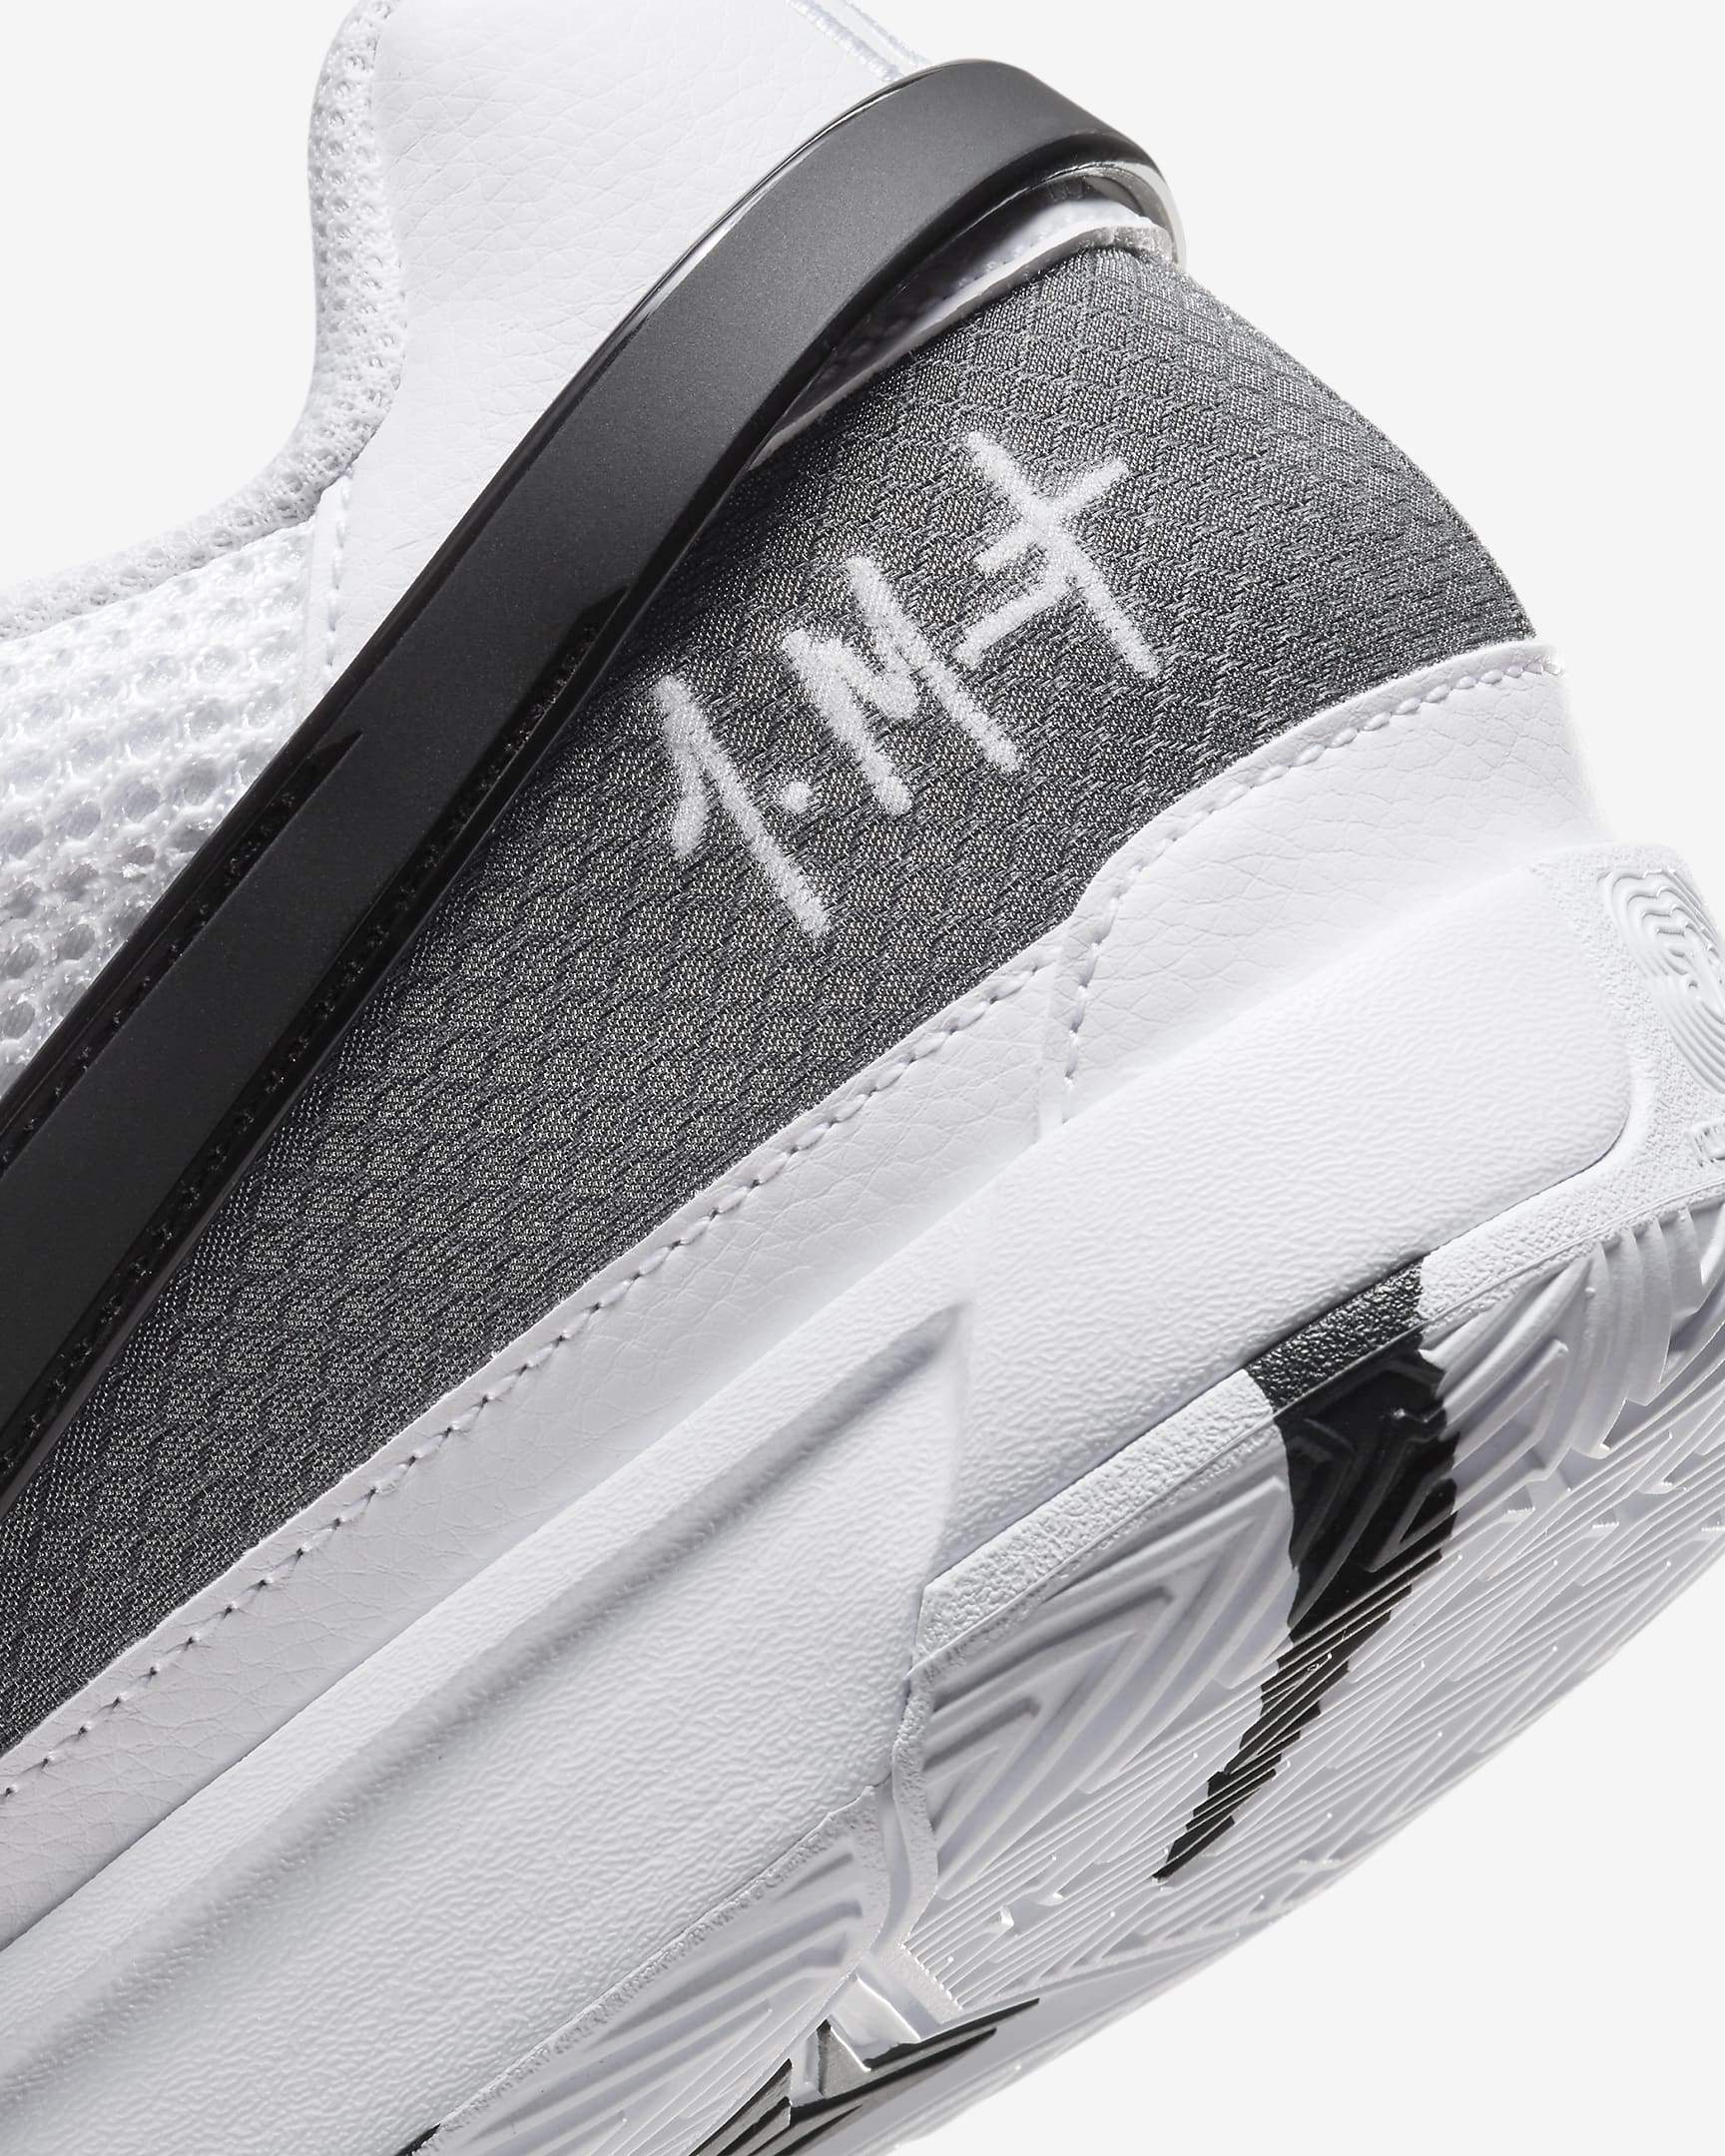 JA 1 'White/Black' Basketball Shoes. Nike UK